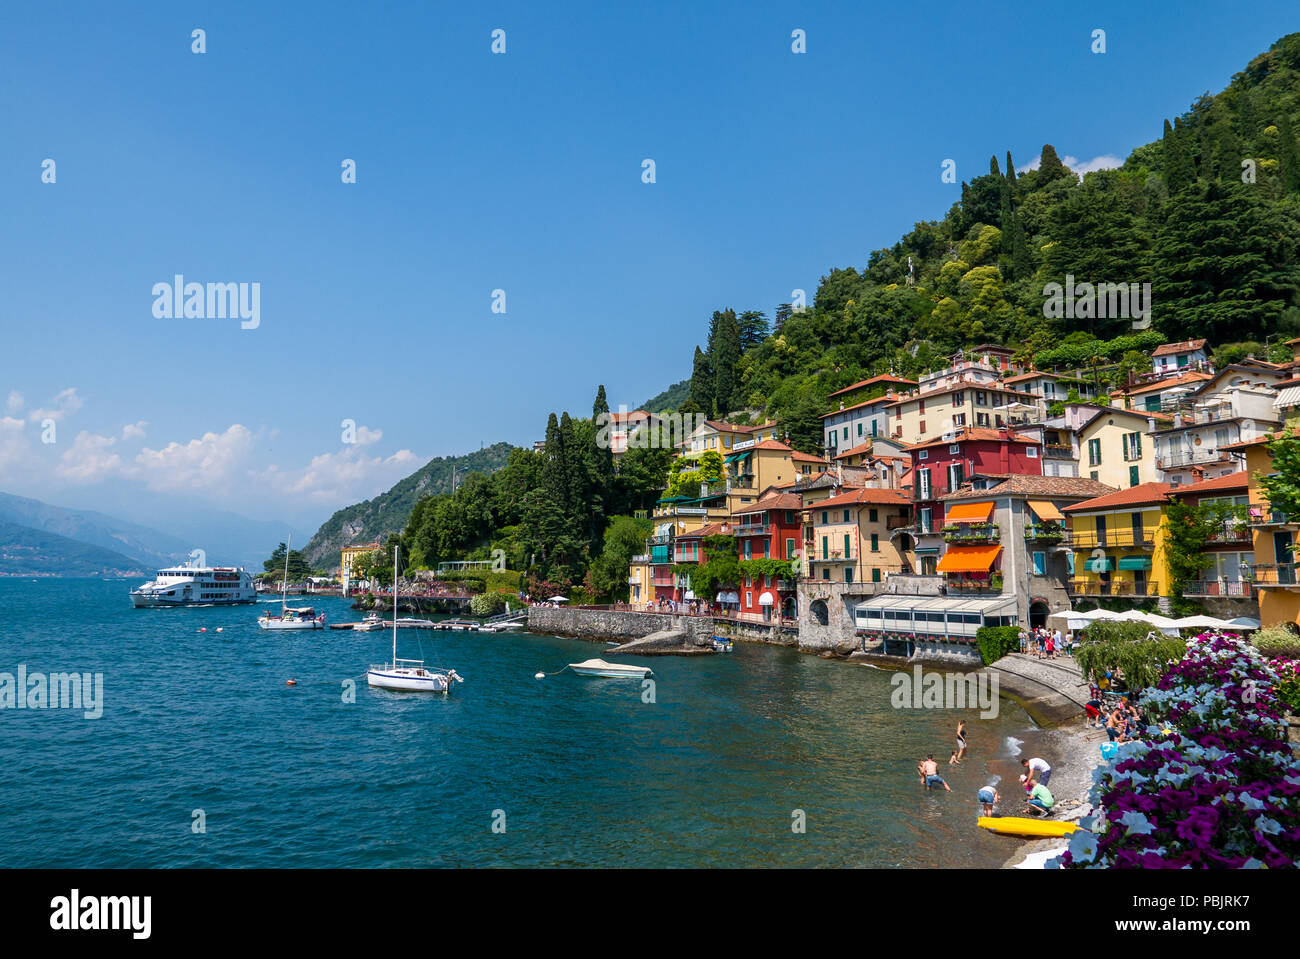 Anzeigen von Varenna Stadt eines der kleinen schönen Städte am Comer See, Lombardei, Italien Stockfoto